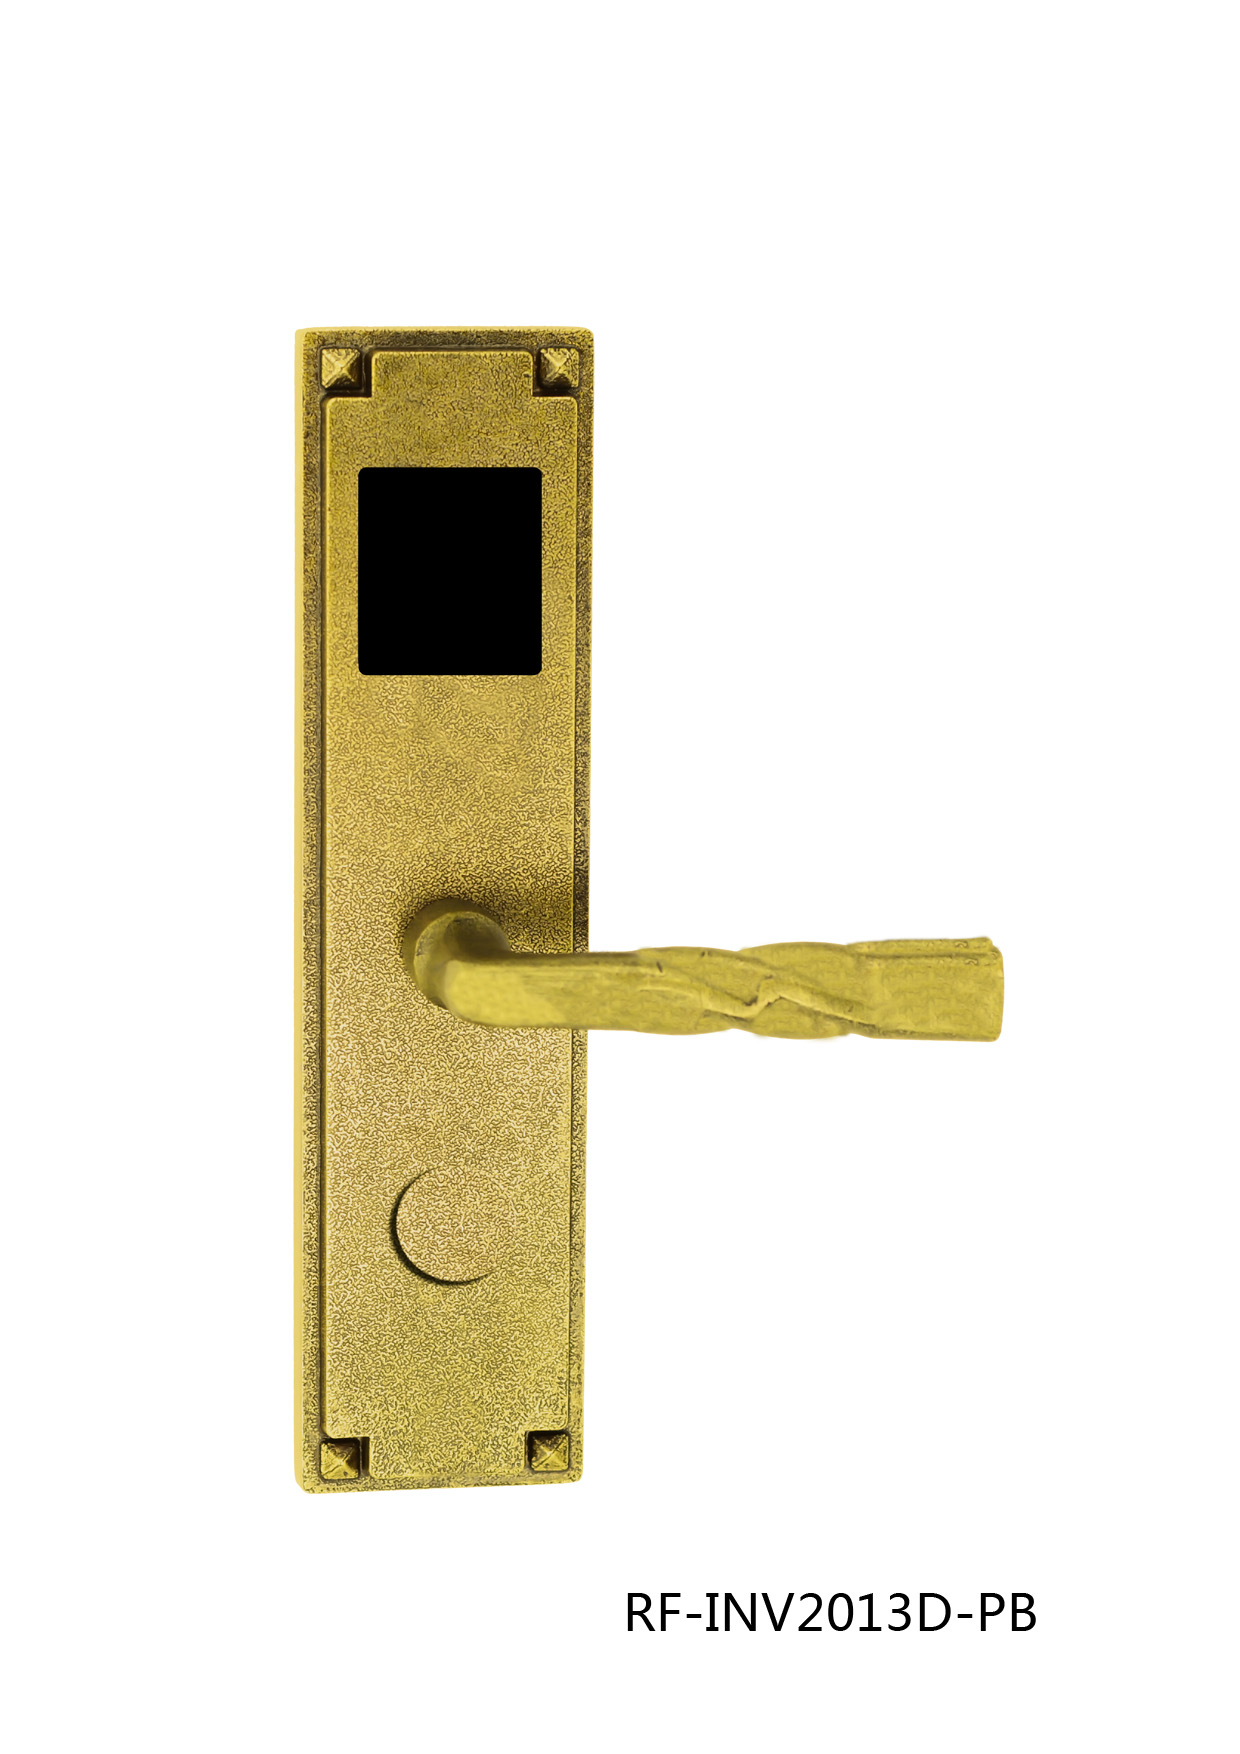 2013D copper lock